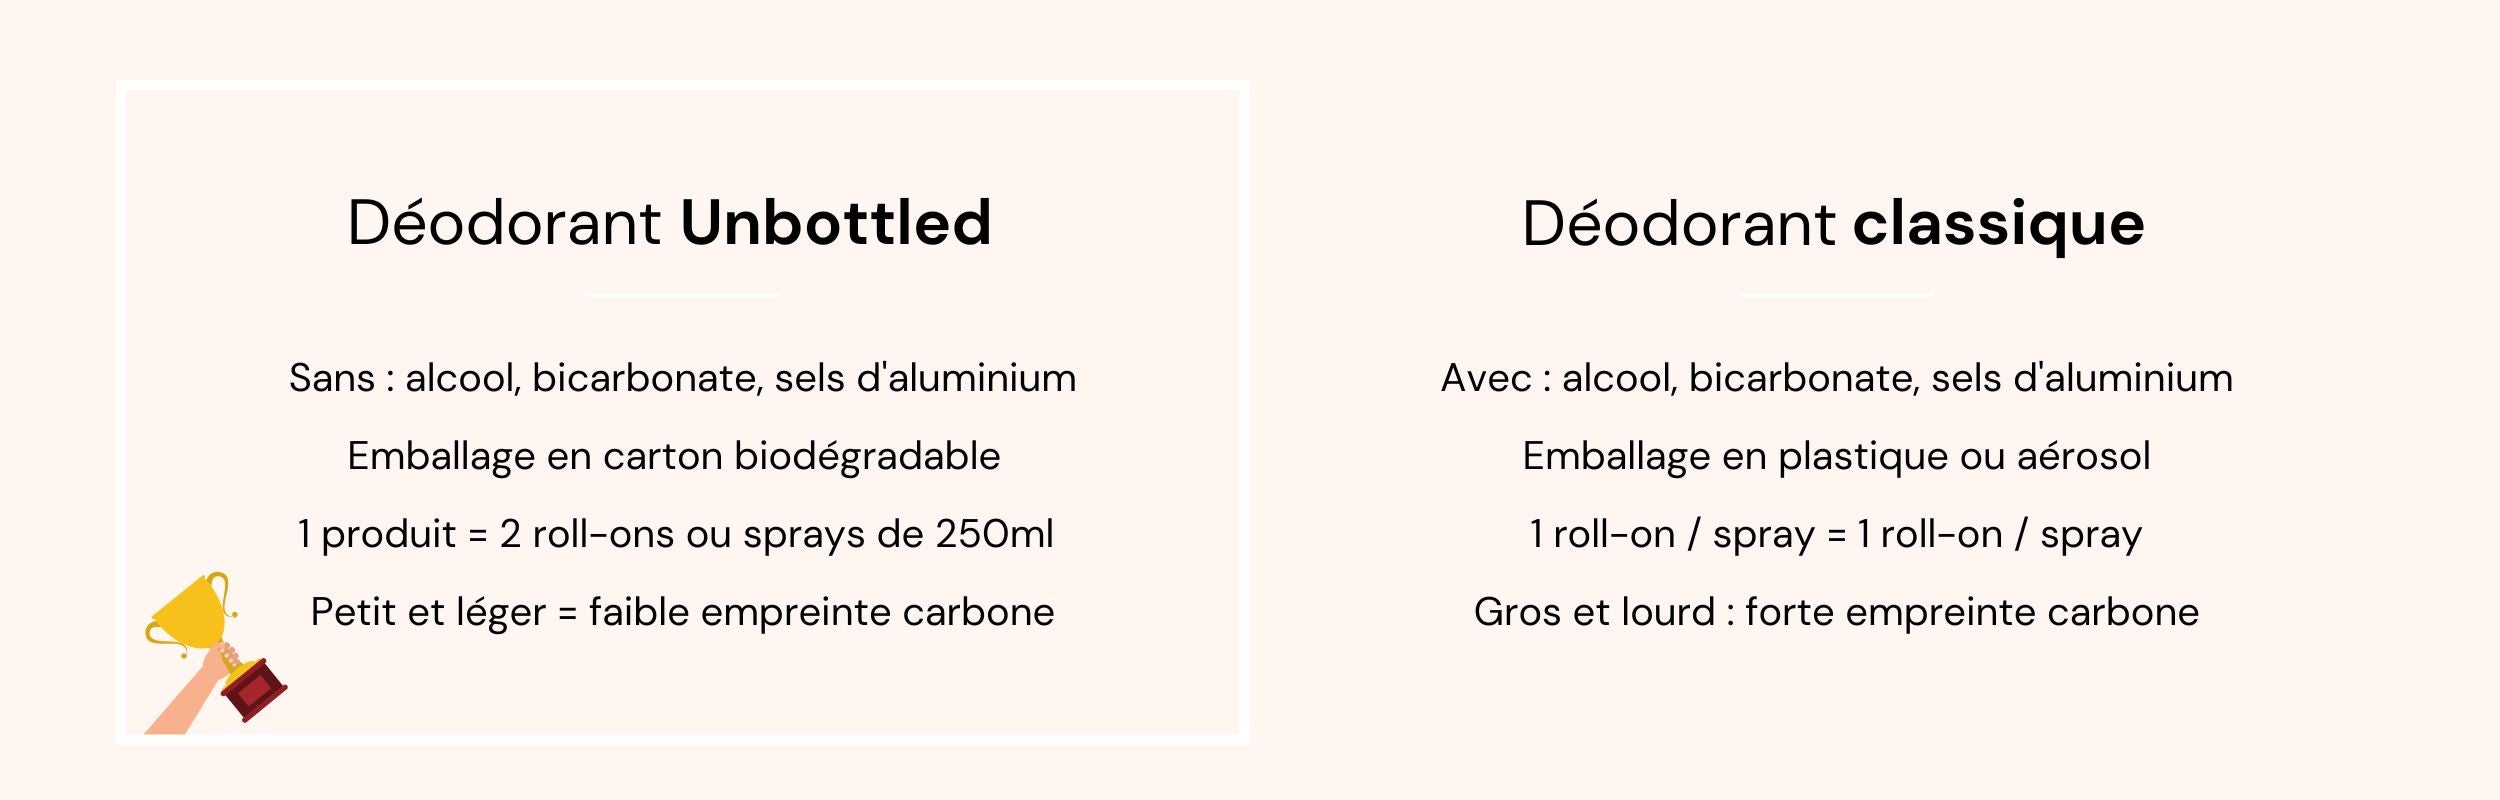 Produits Solides vs Produits en Bouteille